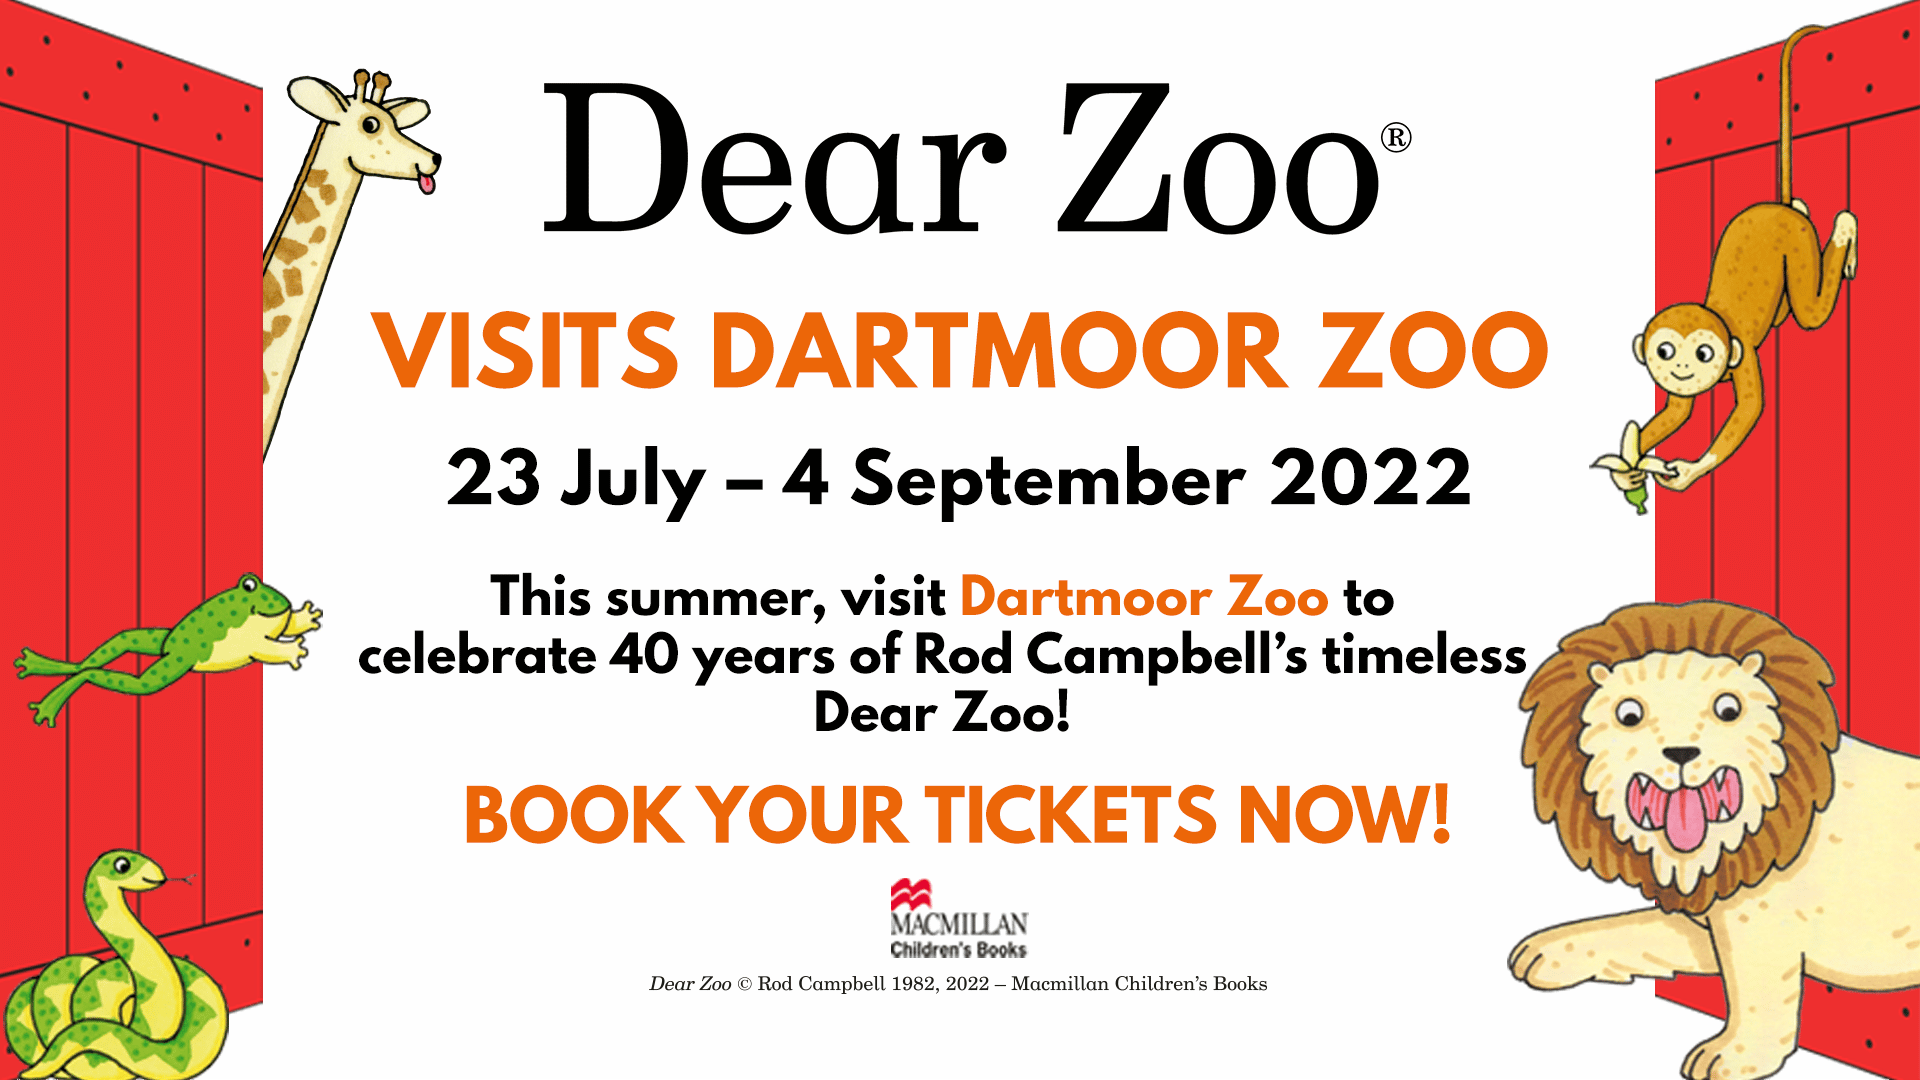 Dear Zoo® visits Dartmoor Zoo! - Dartmoor Zoo